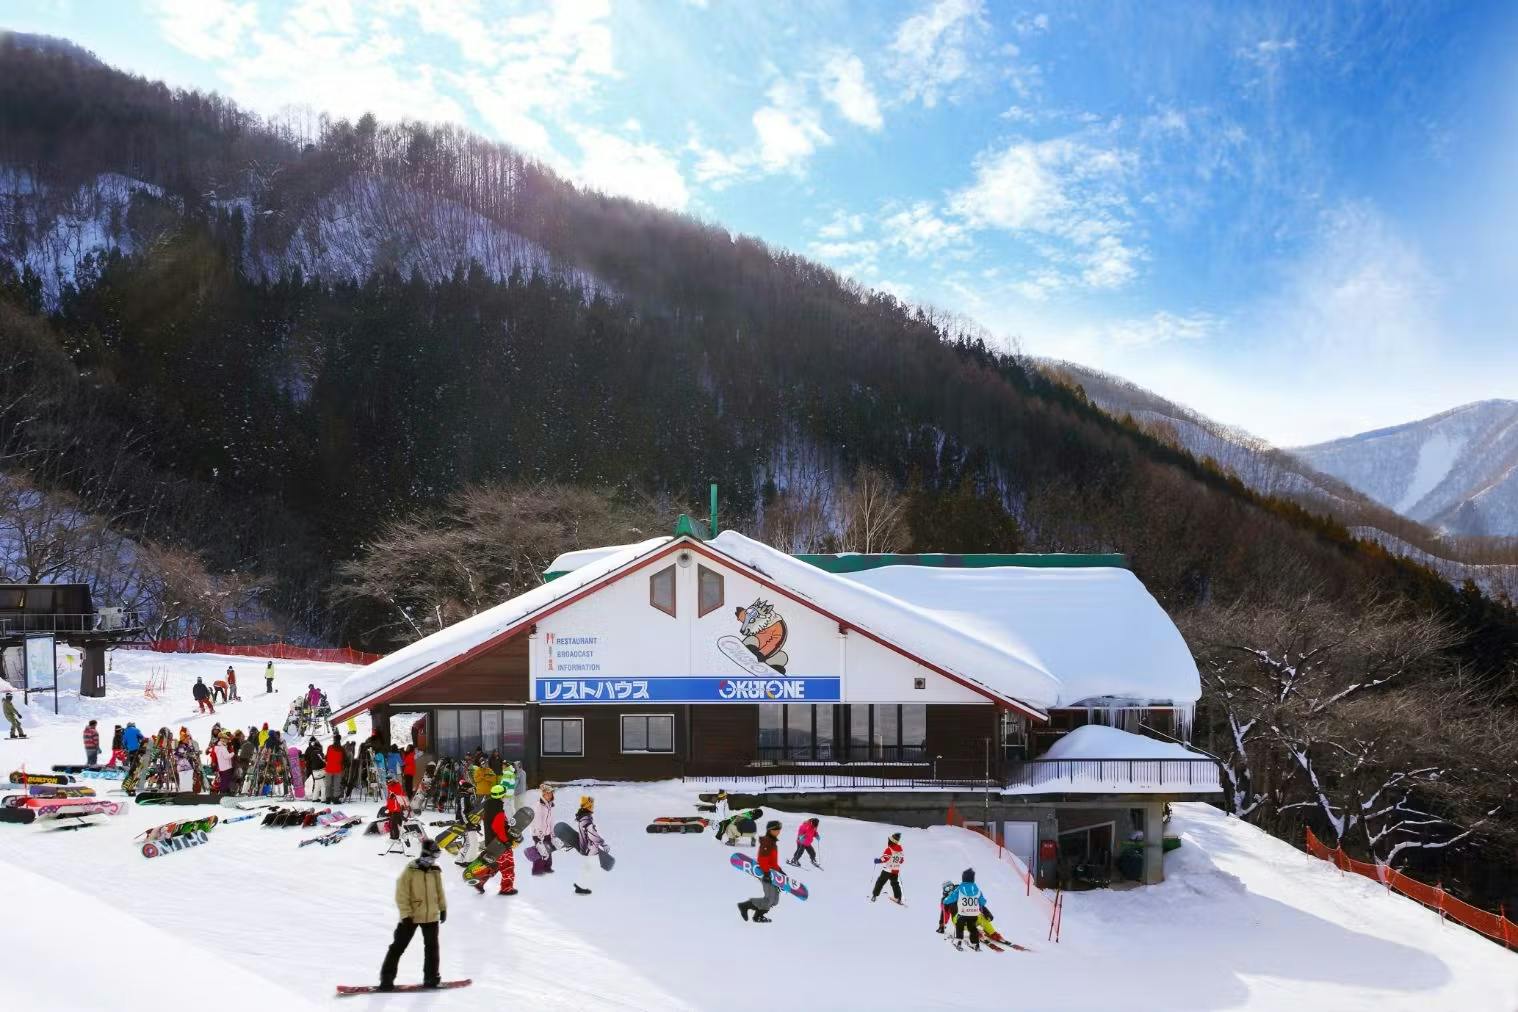 軽井沢スノーパーク - スキー場